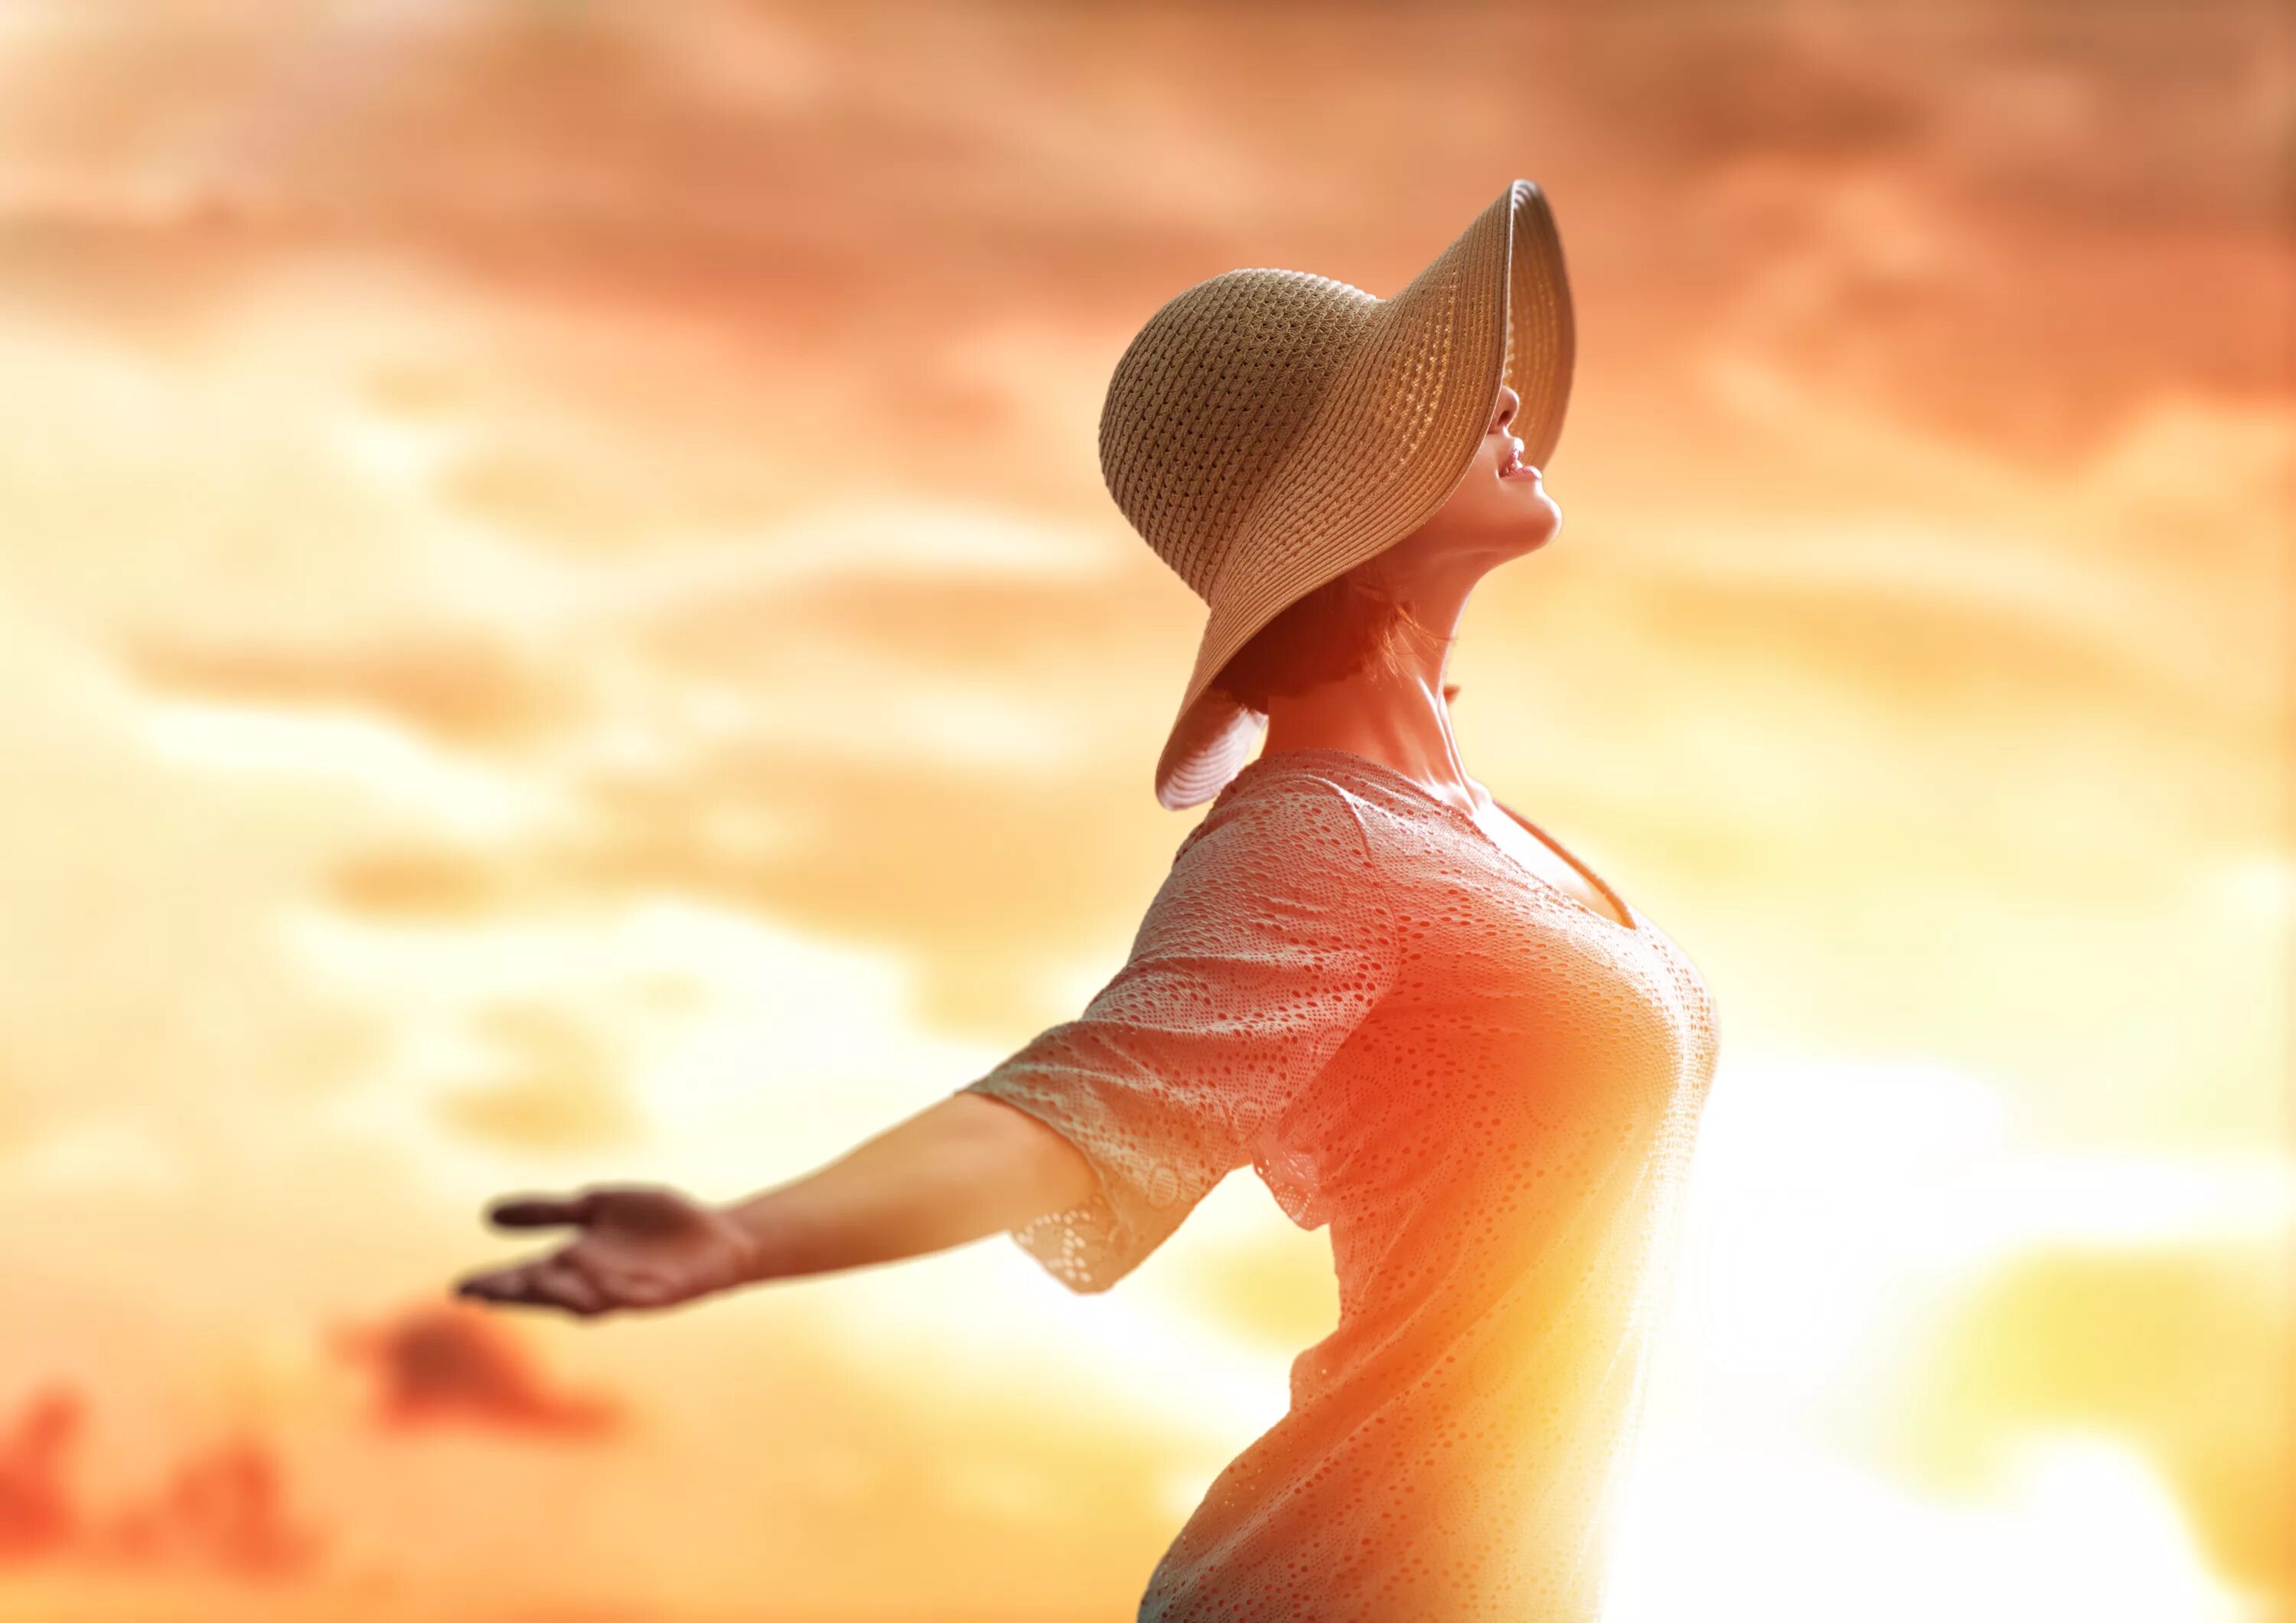 Девушка в шляпе на солнце. Девушка счастливая в шляпе. Девушка солнце. Девушка в лучах солнца. Sunshine woman